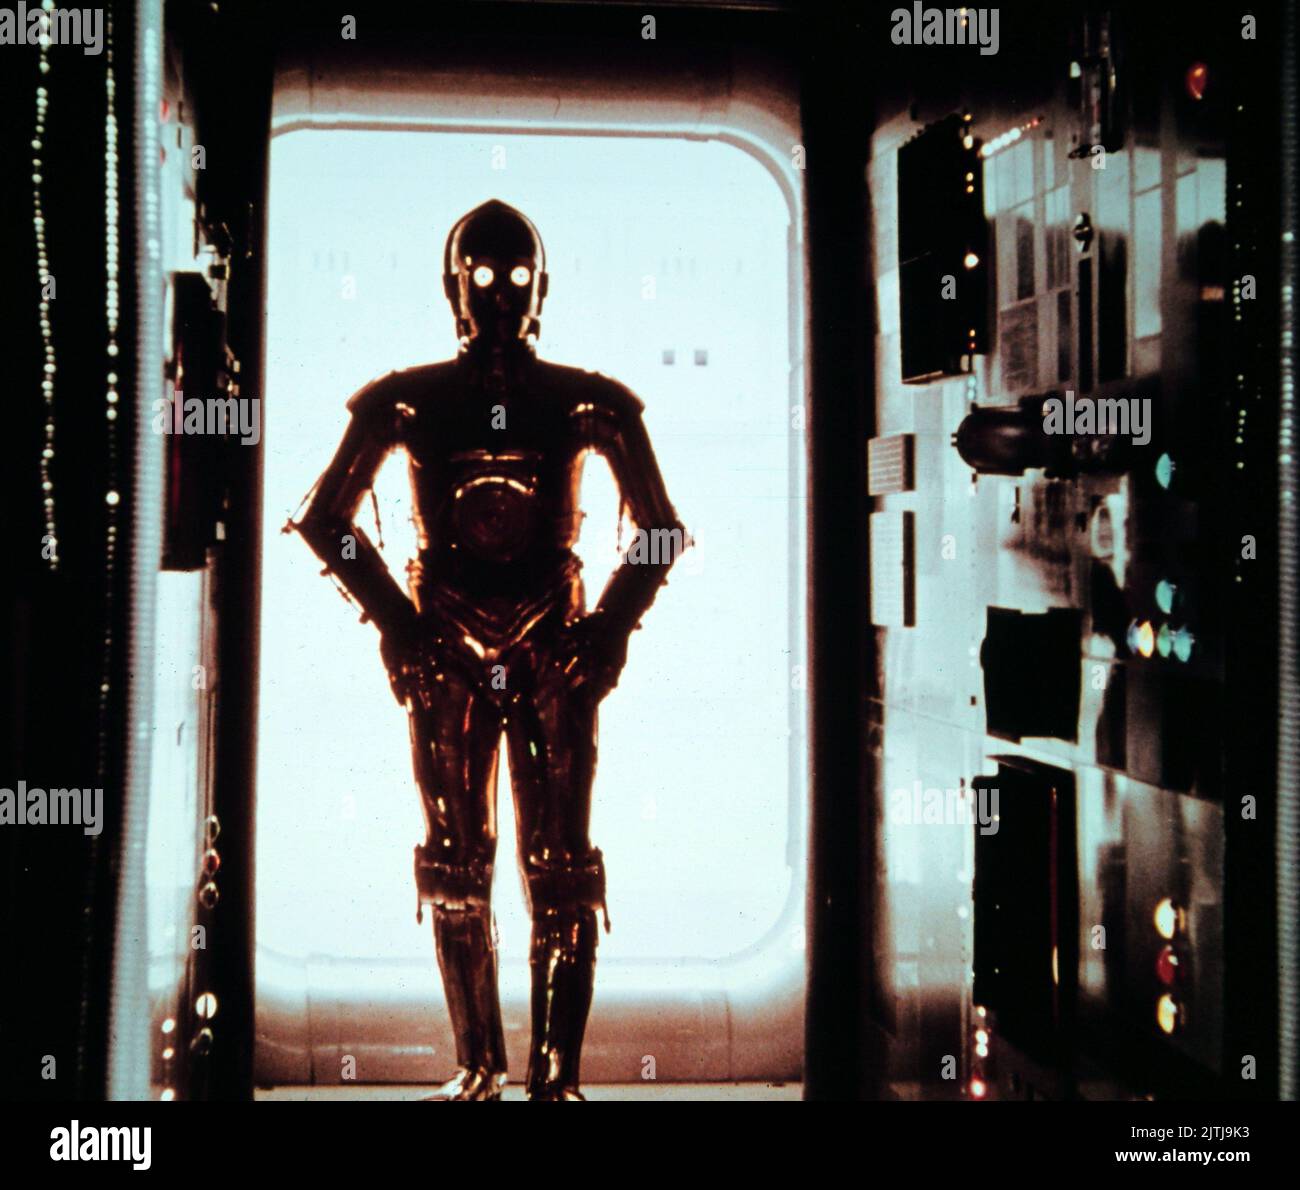 Star Wars, aka Krieg der Sterne, USA 1977, Regie: George Lucas, Charaktere: C-3PO im Gegenlicht Stock Photo